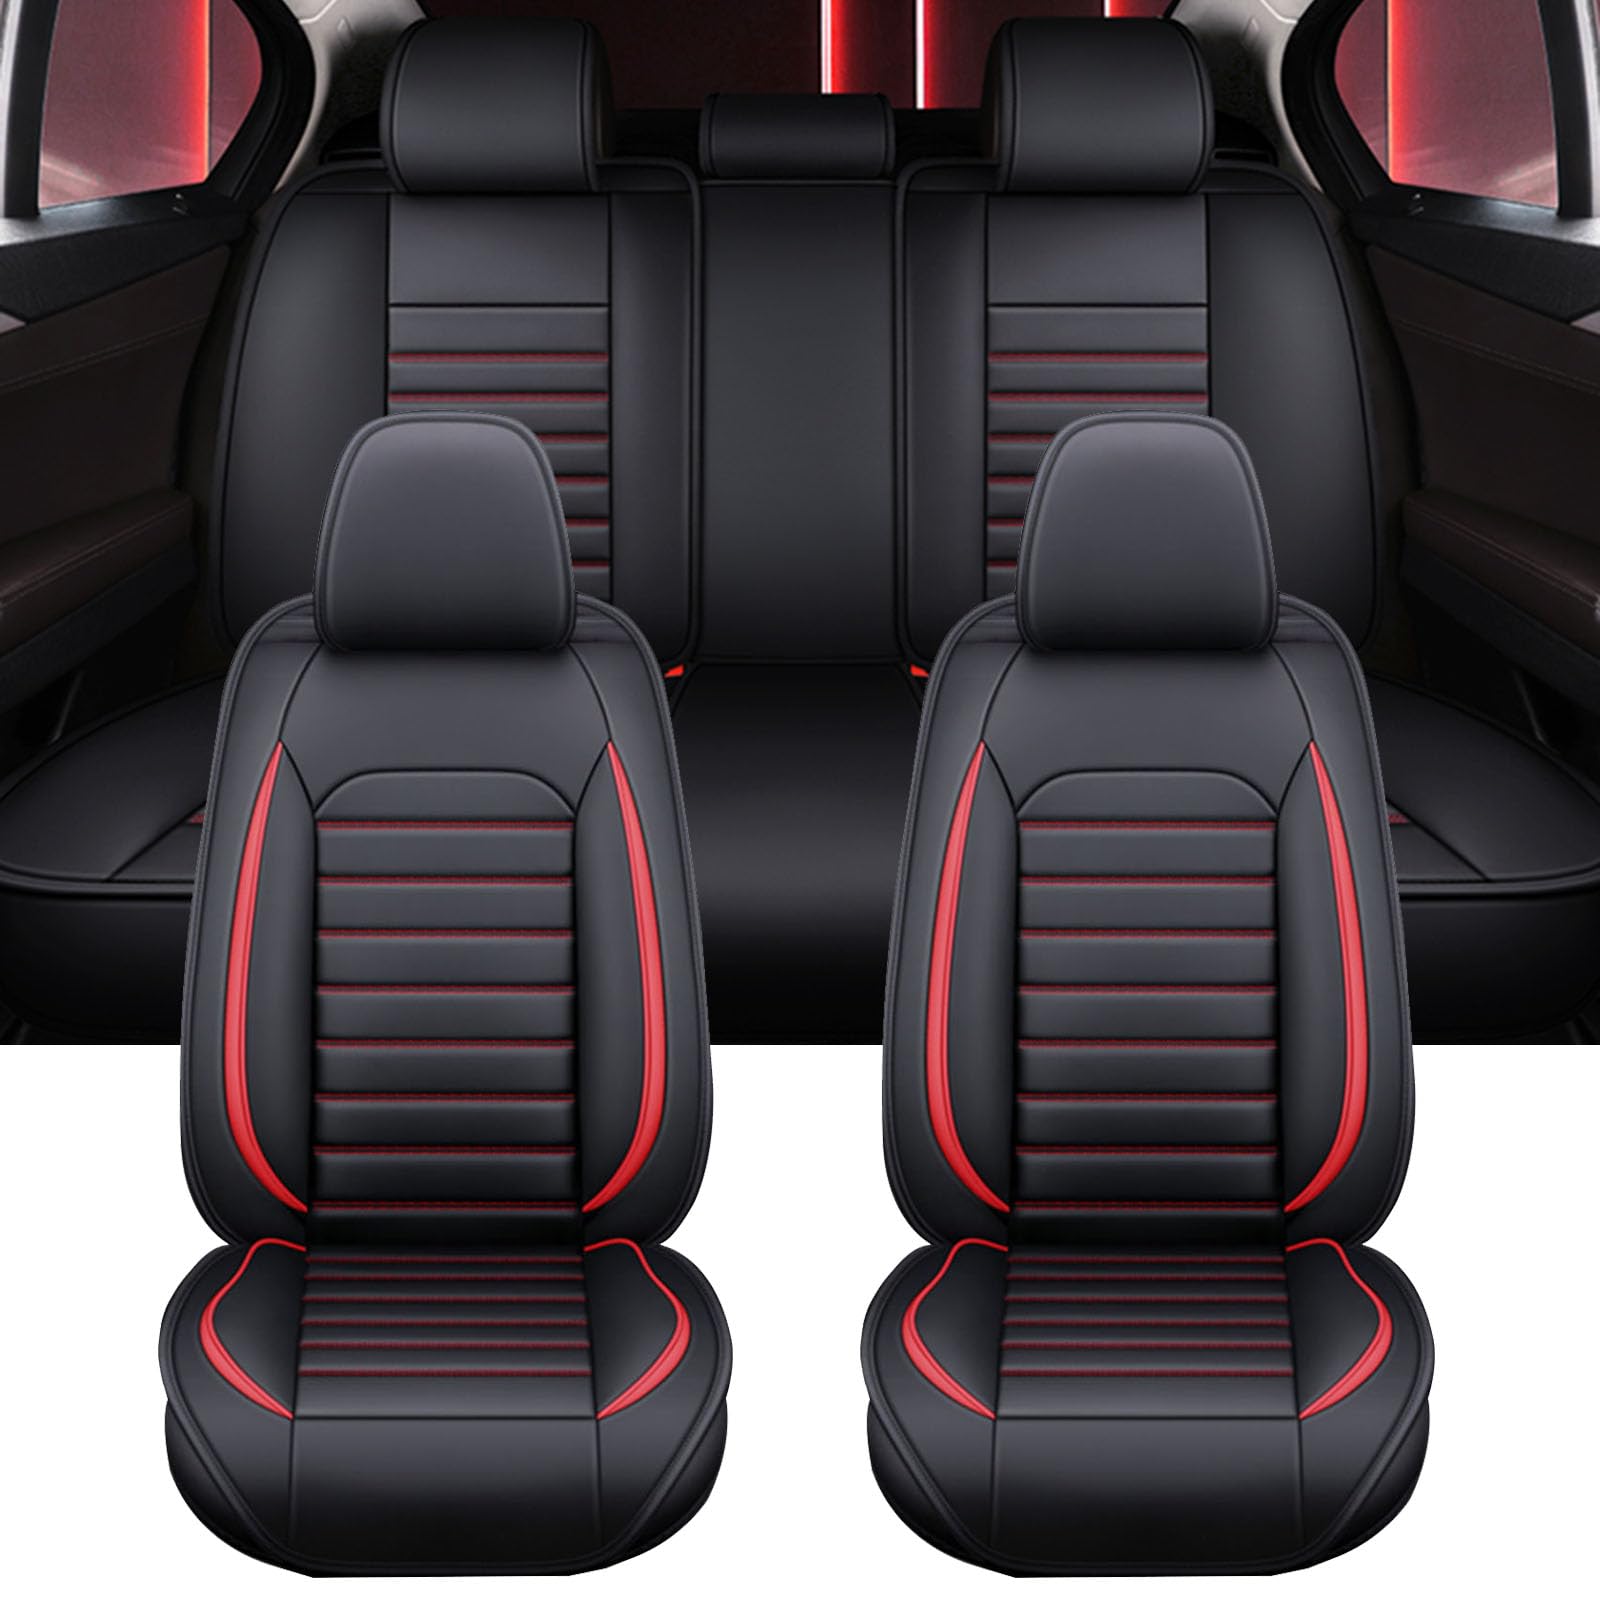 XLUMIO Auto Sitzbezüge Set für Mercedes Benz E Class Sedan E300 E300d E400d E450 AMG E53/E63, 5 Sitzer Sitzbezüge Vorne und Hinten, Wasserdichter PU Leder Autositzschutzbezug,A Black+Red von XLUMIO